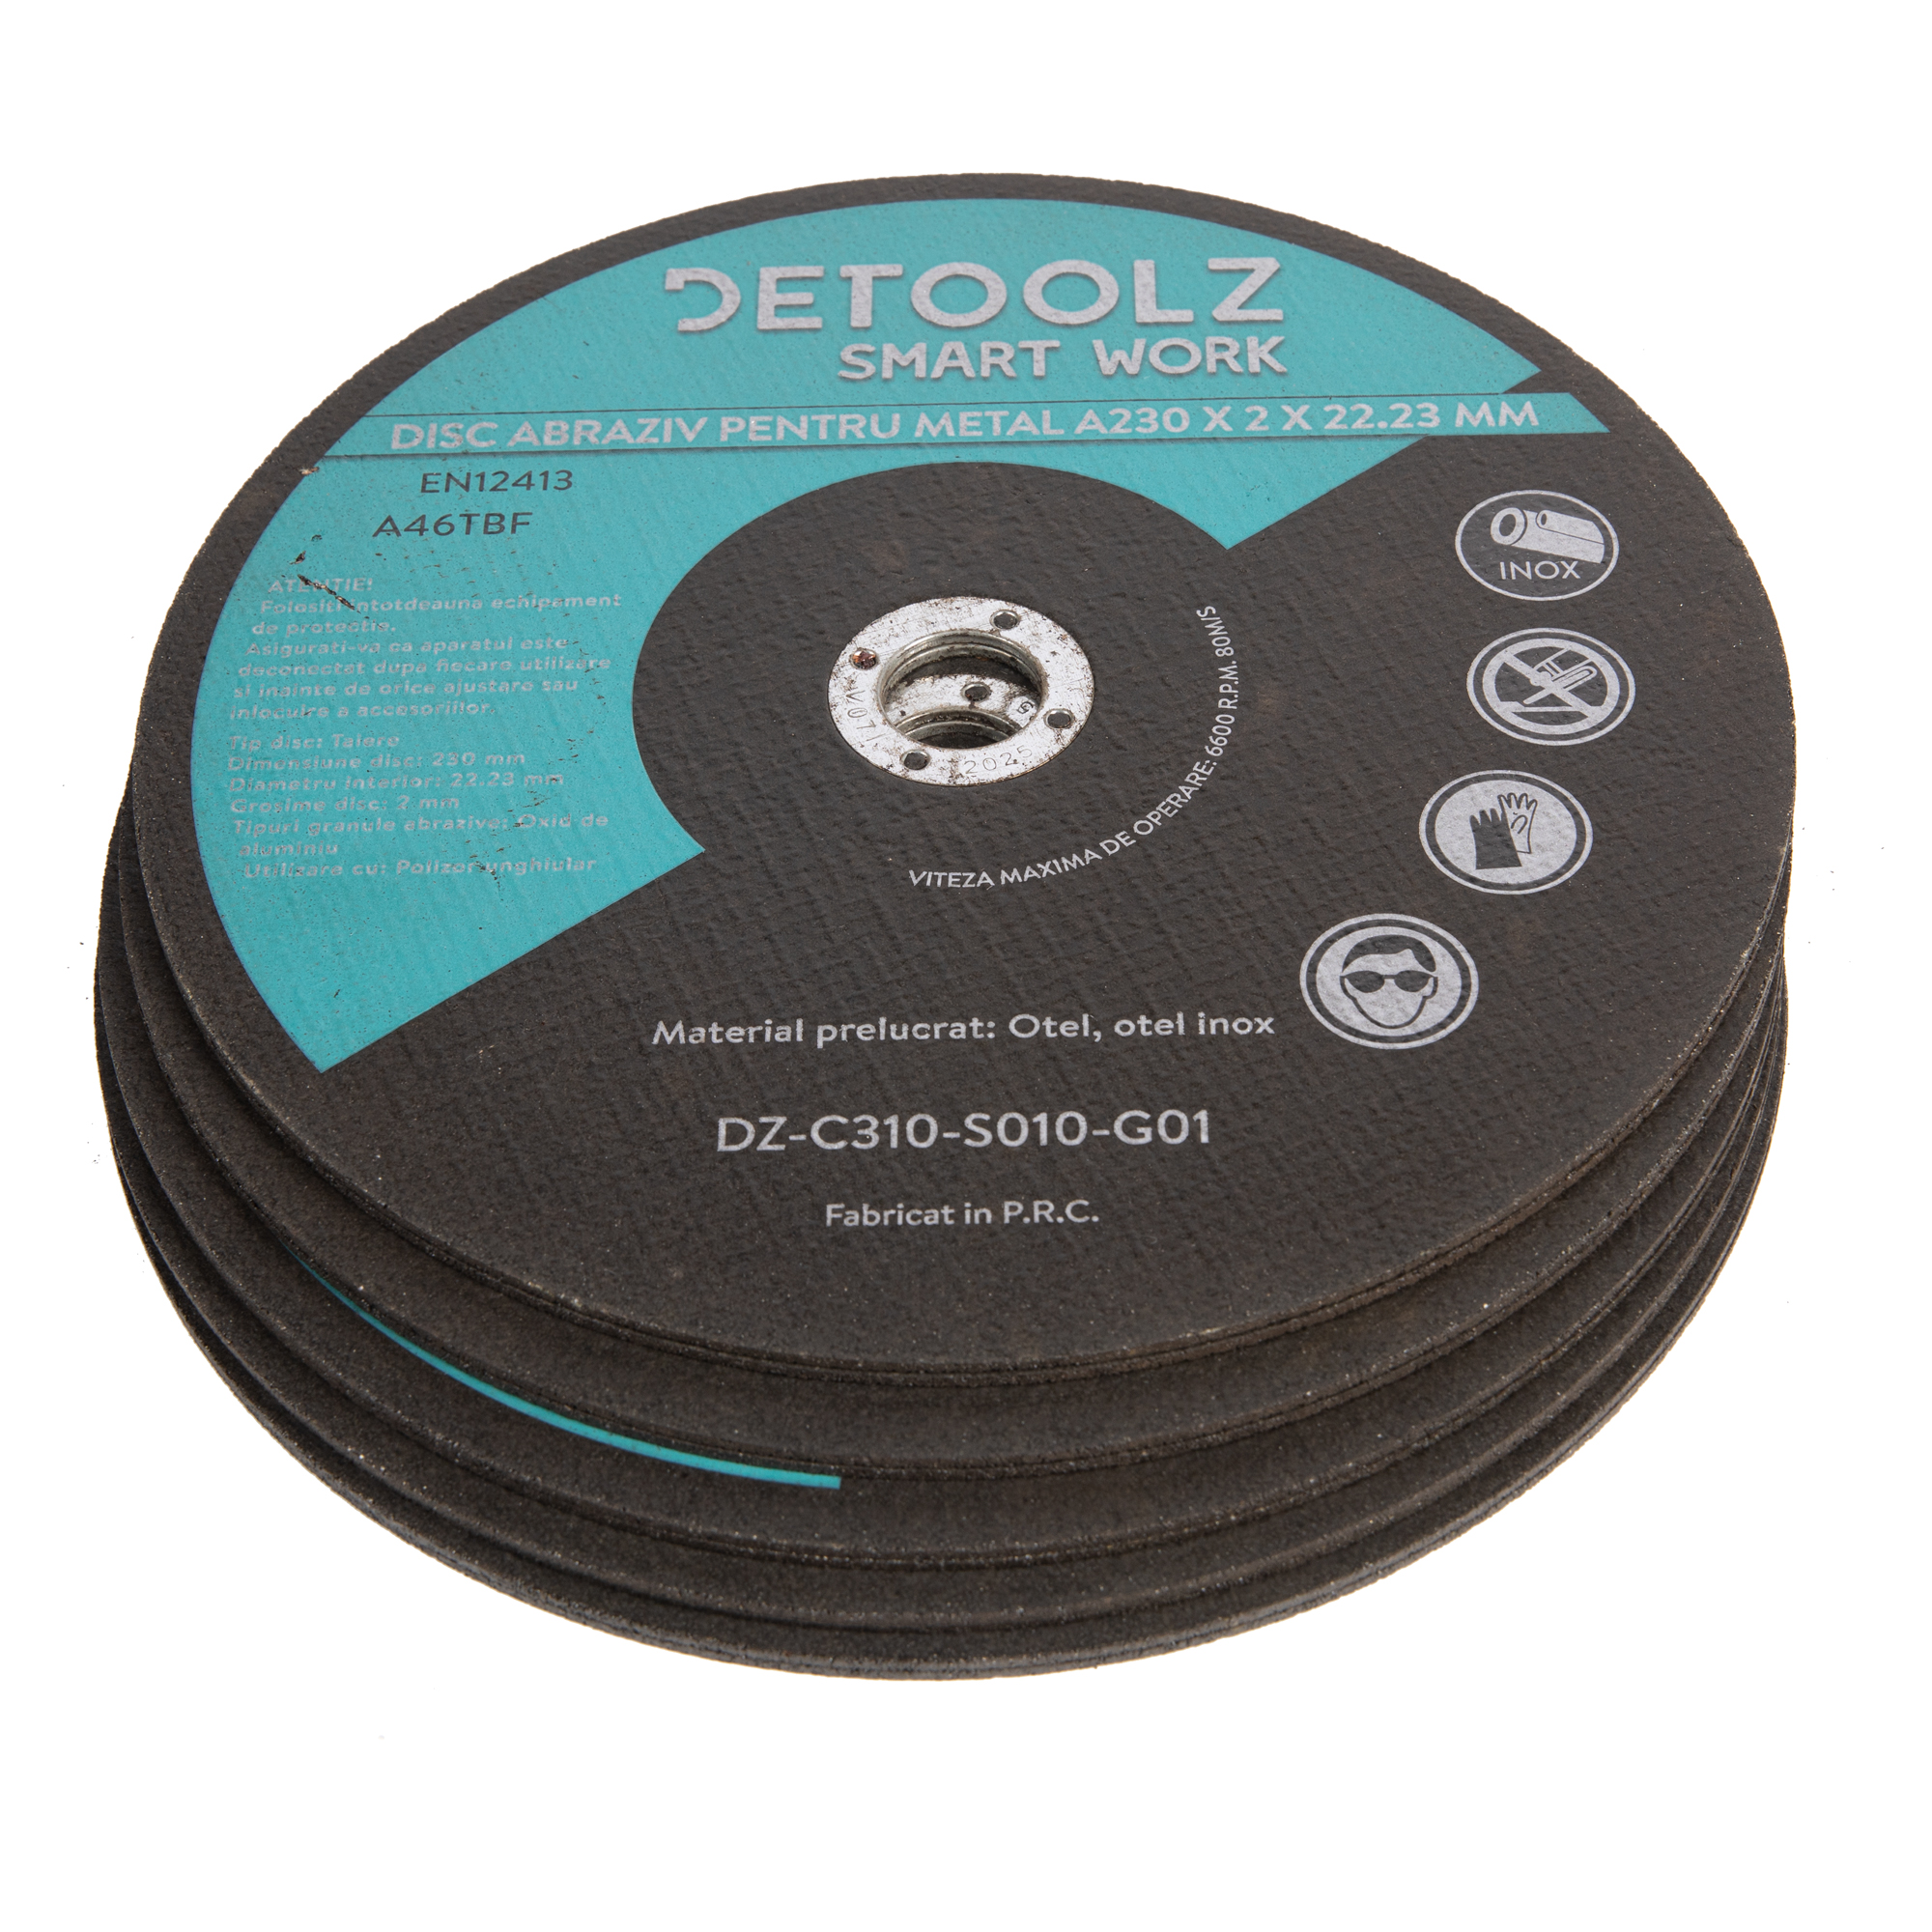 Accesorii slefuitoare - Set disc abraziv pentru metal 230 mm (10/set), bricolajmarket.ro